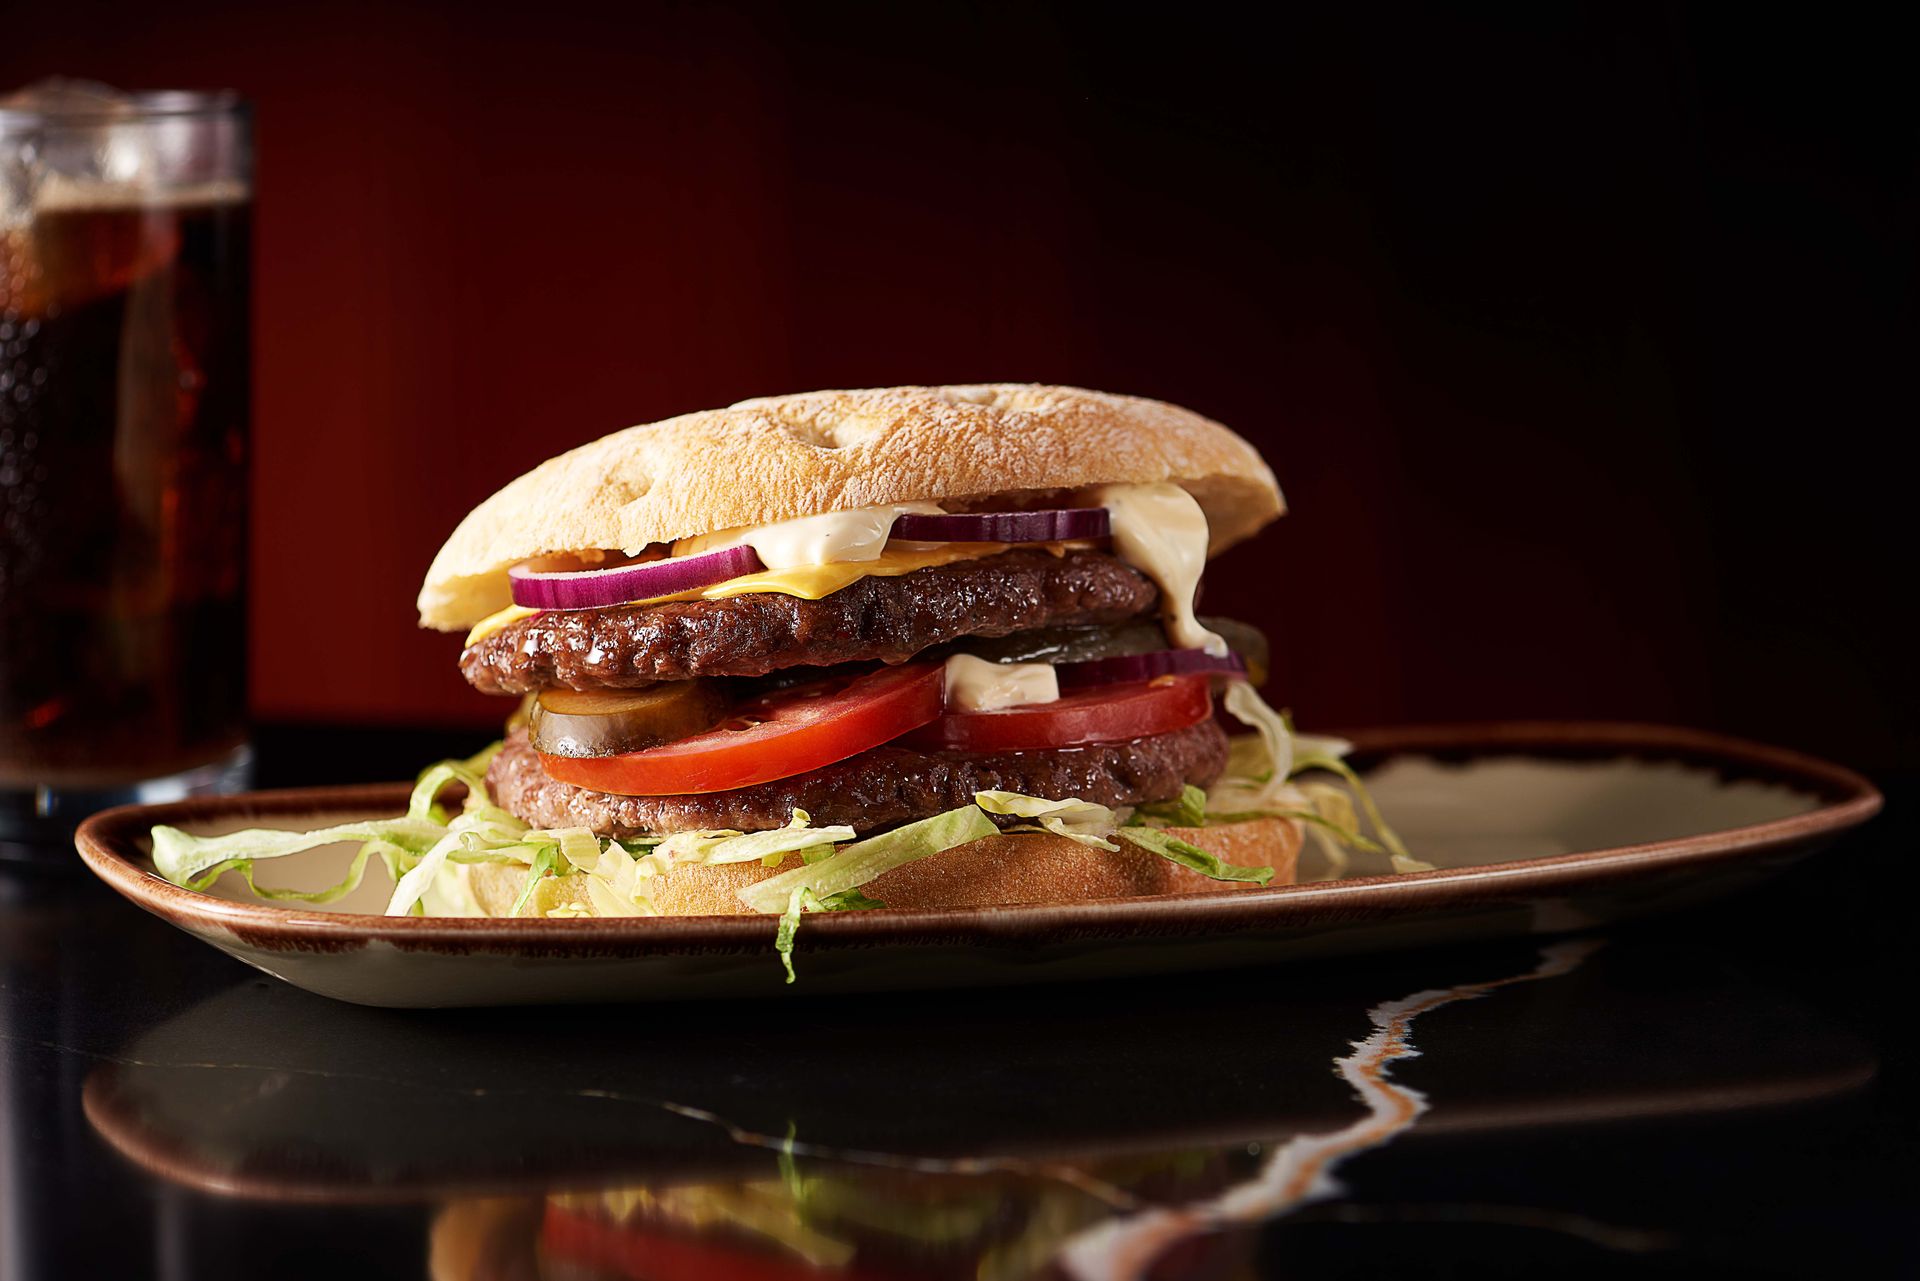 Redefine meat burger met brie, uienrelish, rucola, frites en mosterdmayonaise